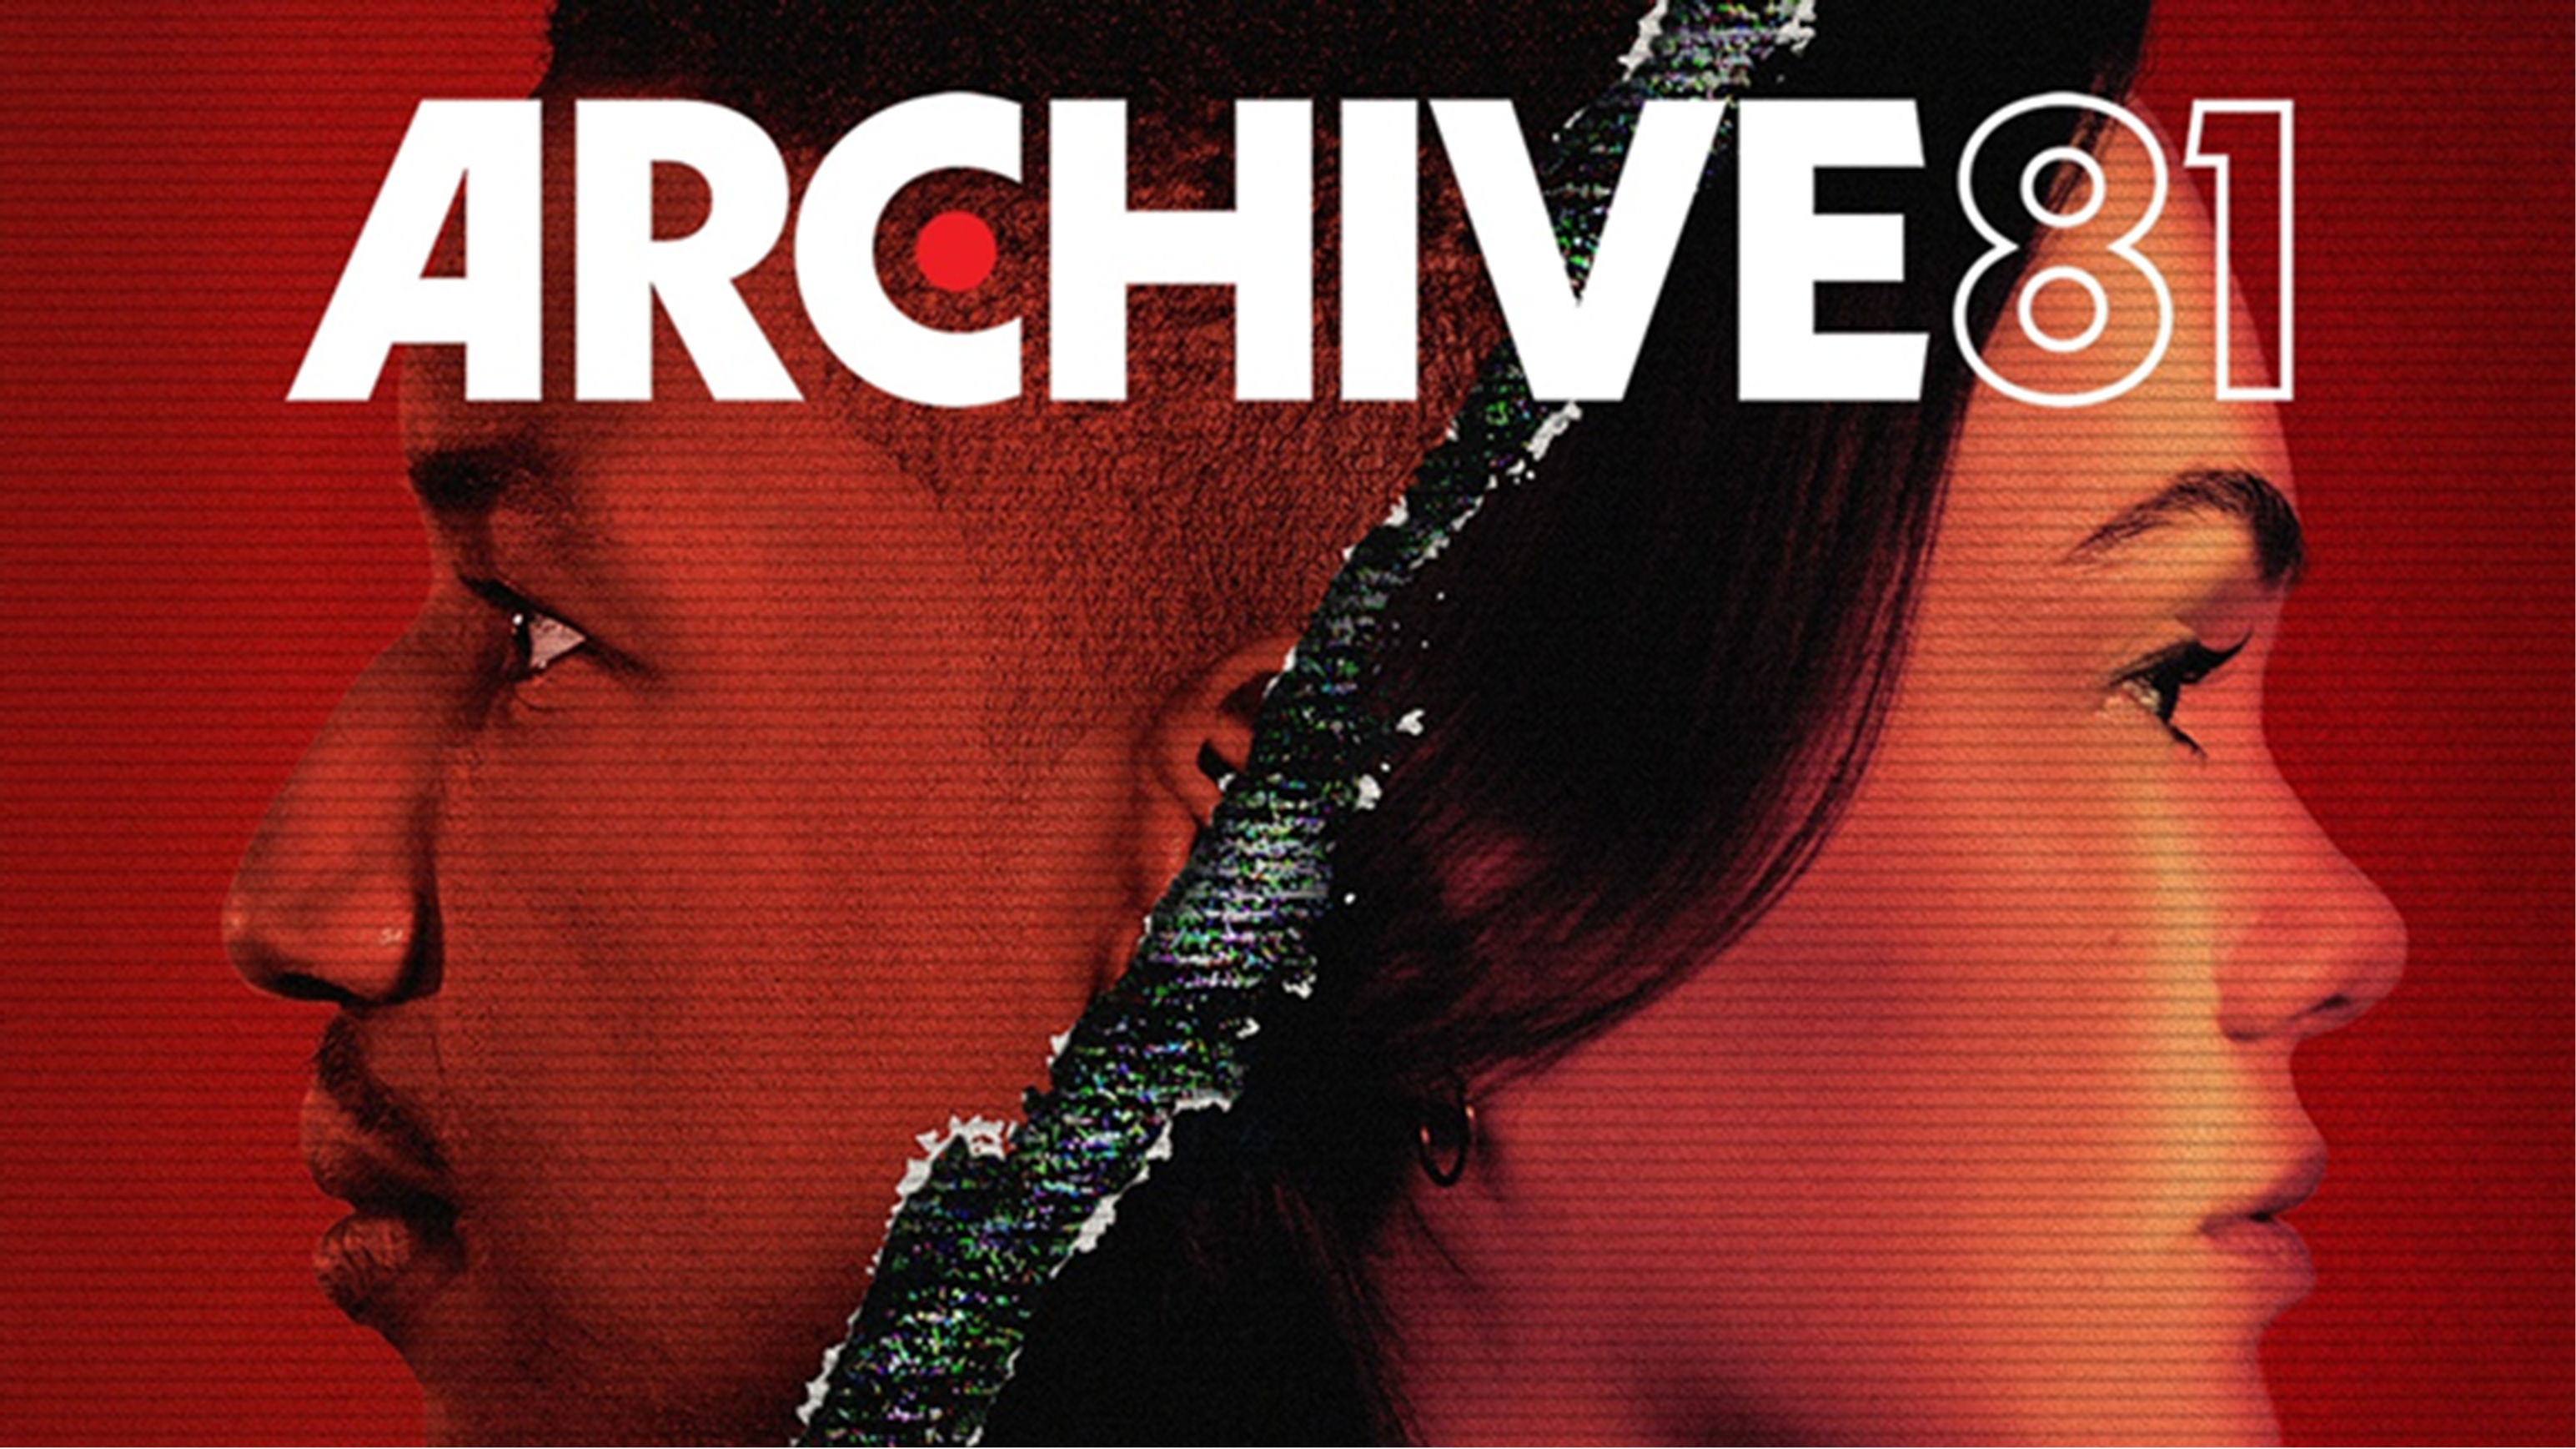 Archive 81 – The American Archivist